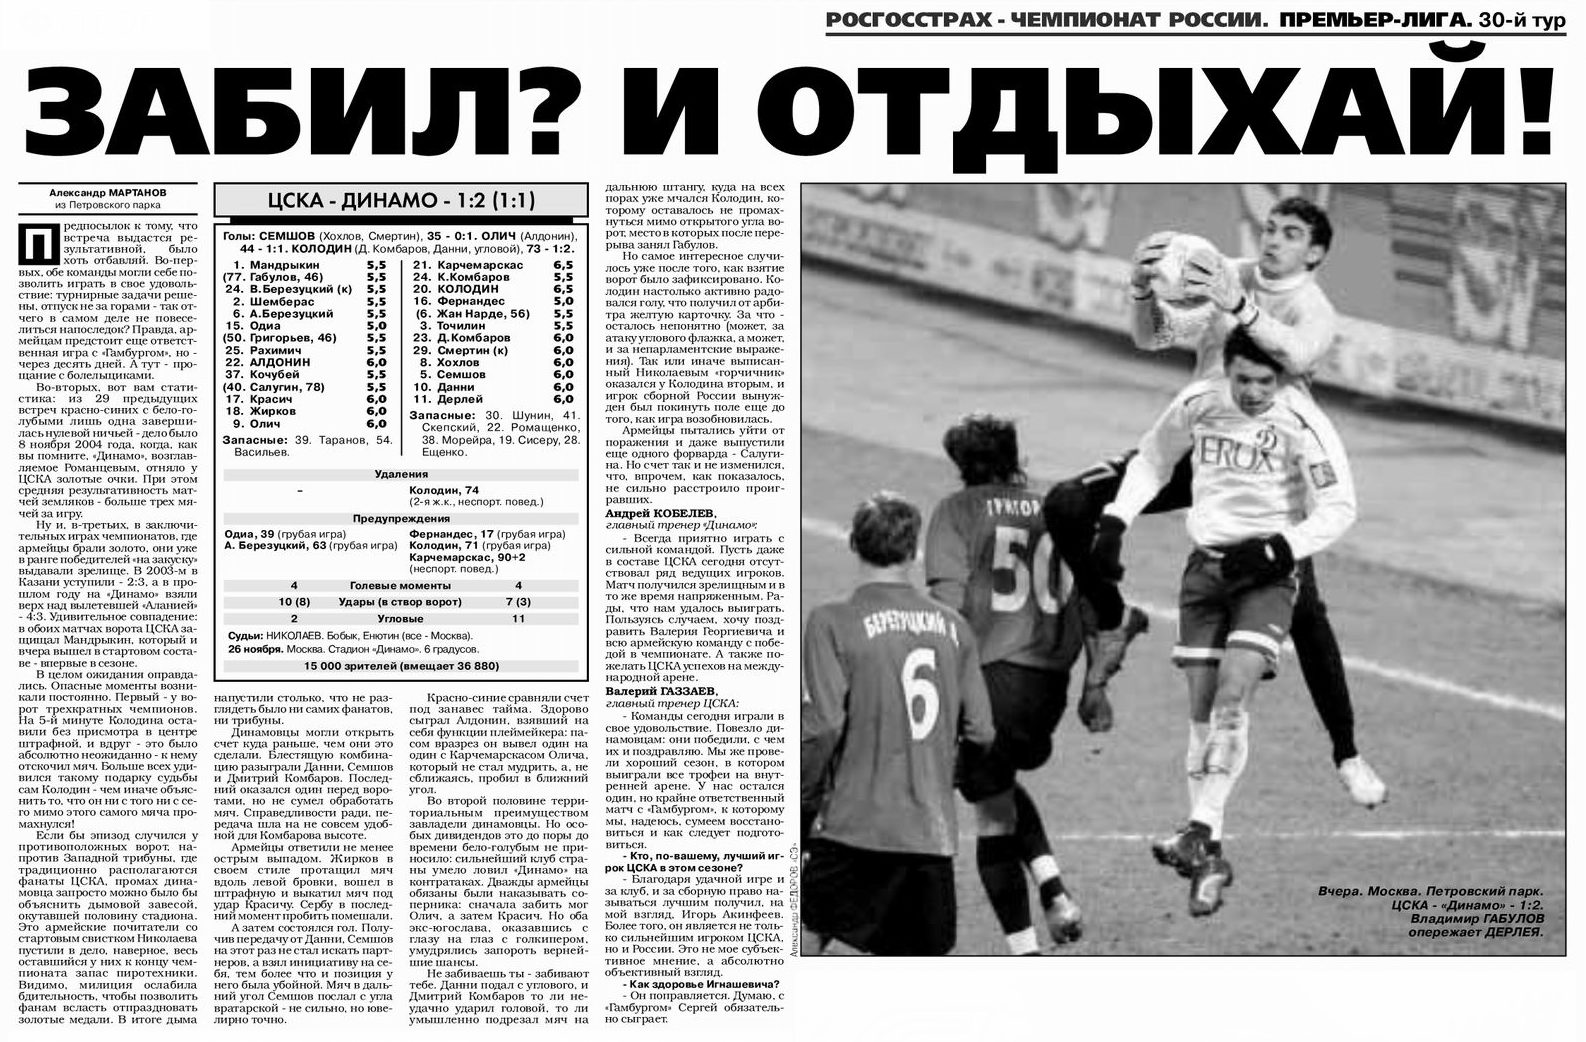 2006-11-26.CSKA-DinamoM.1